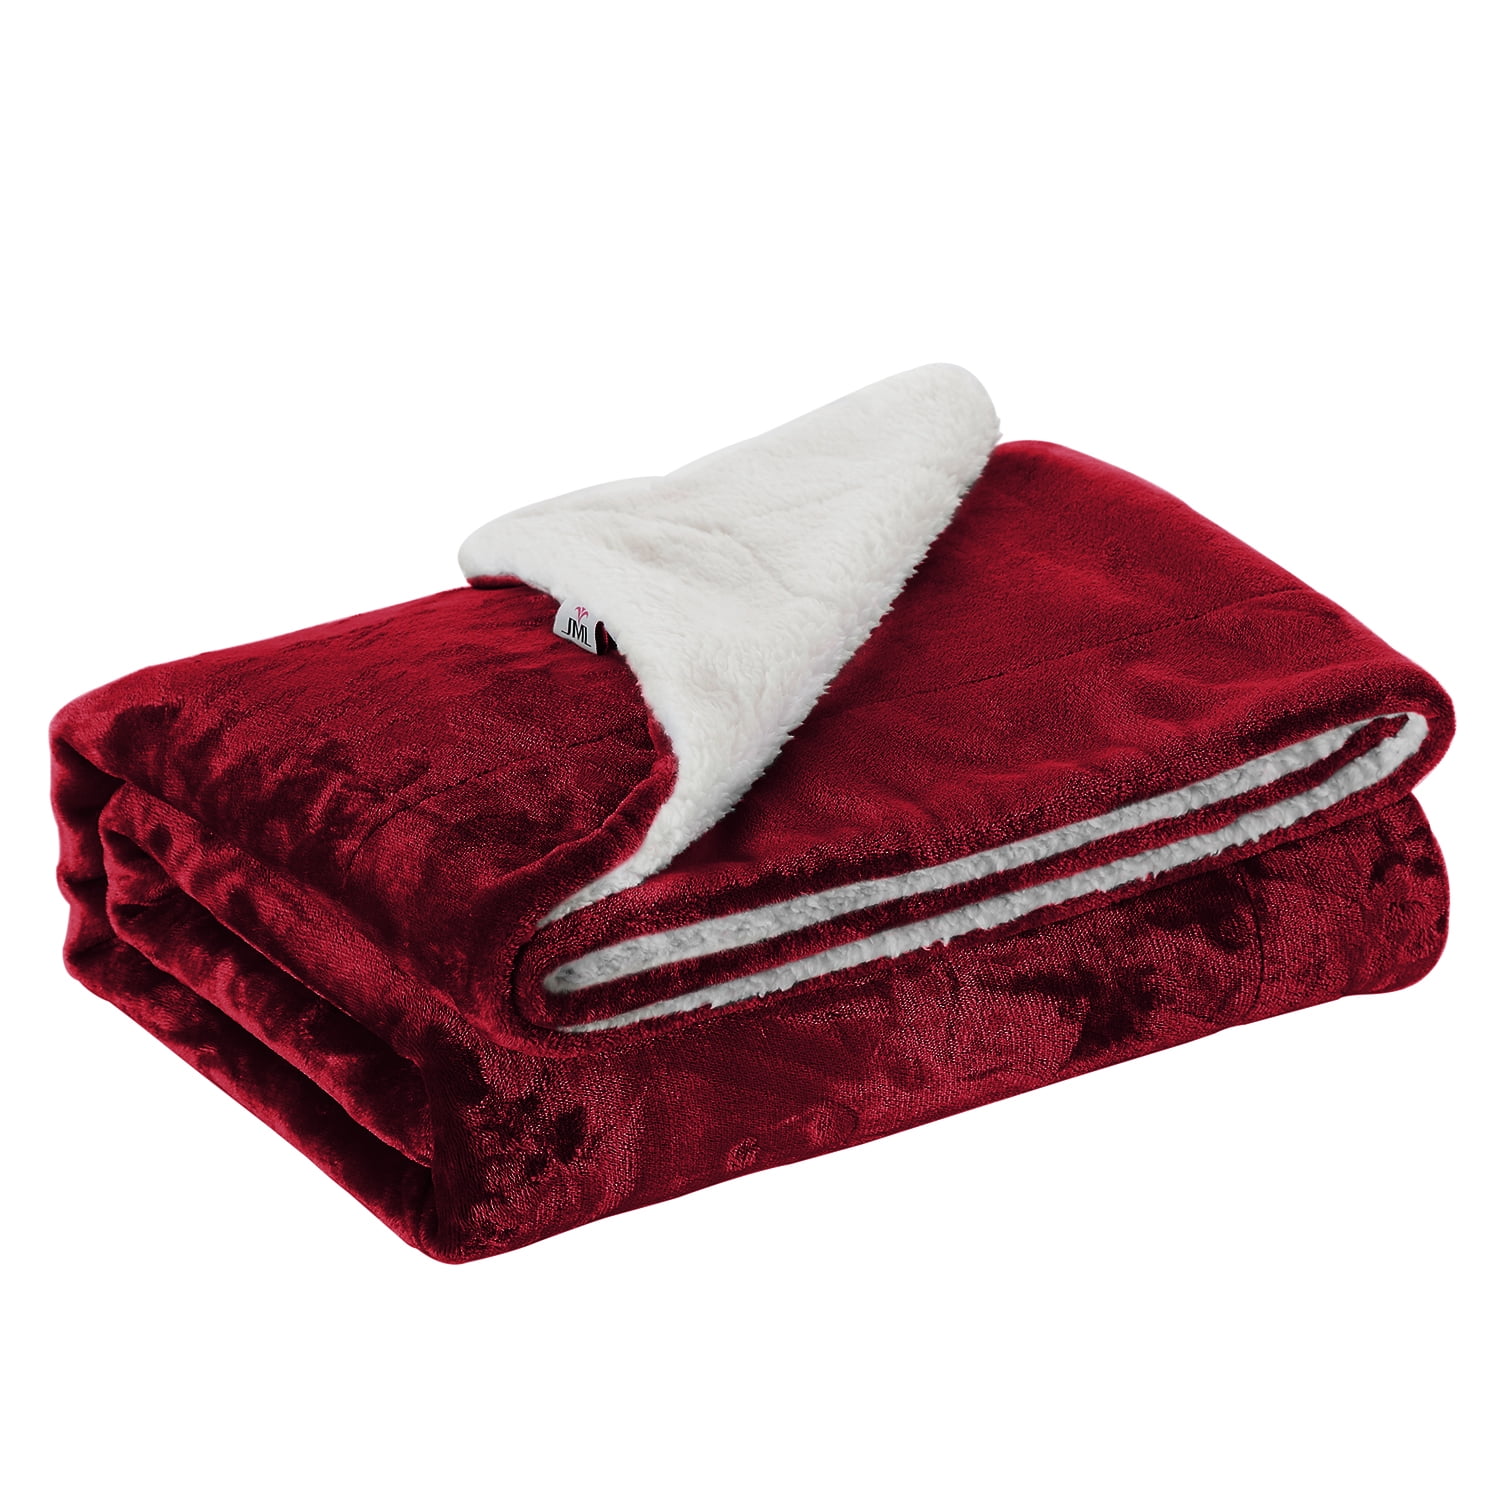 Sherpa Plush Throw Blanket 66 X 90, BalooWorld